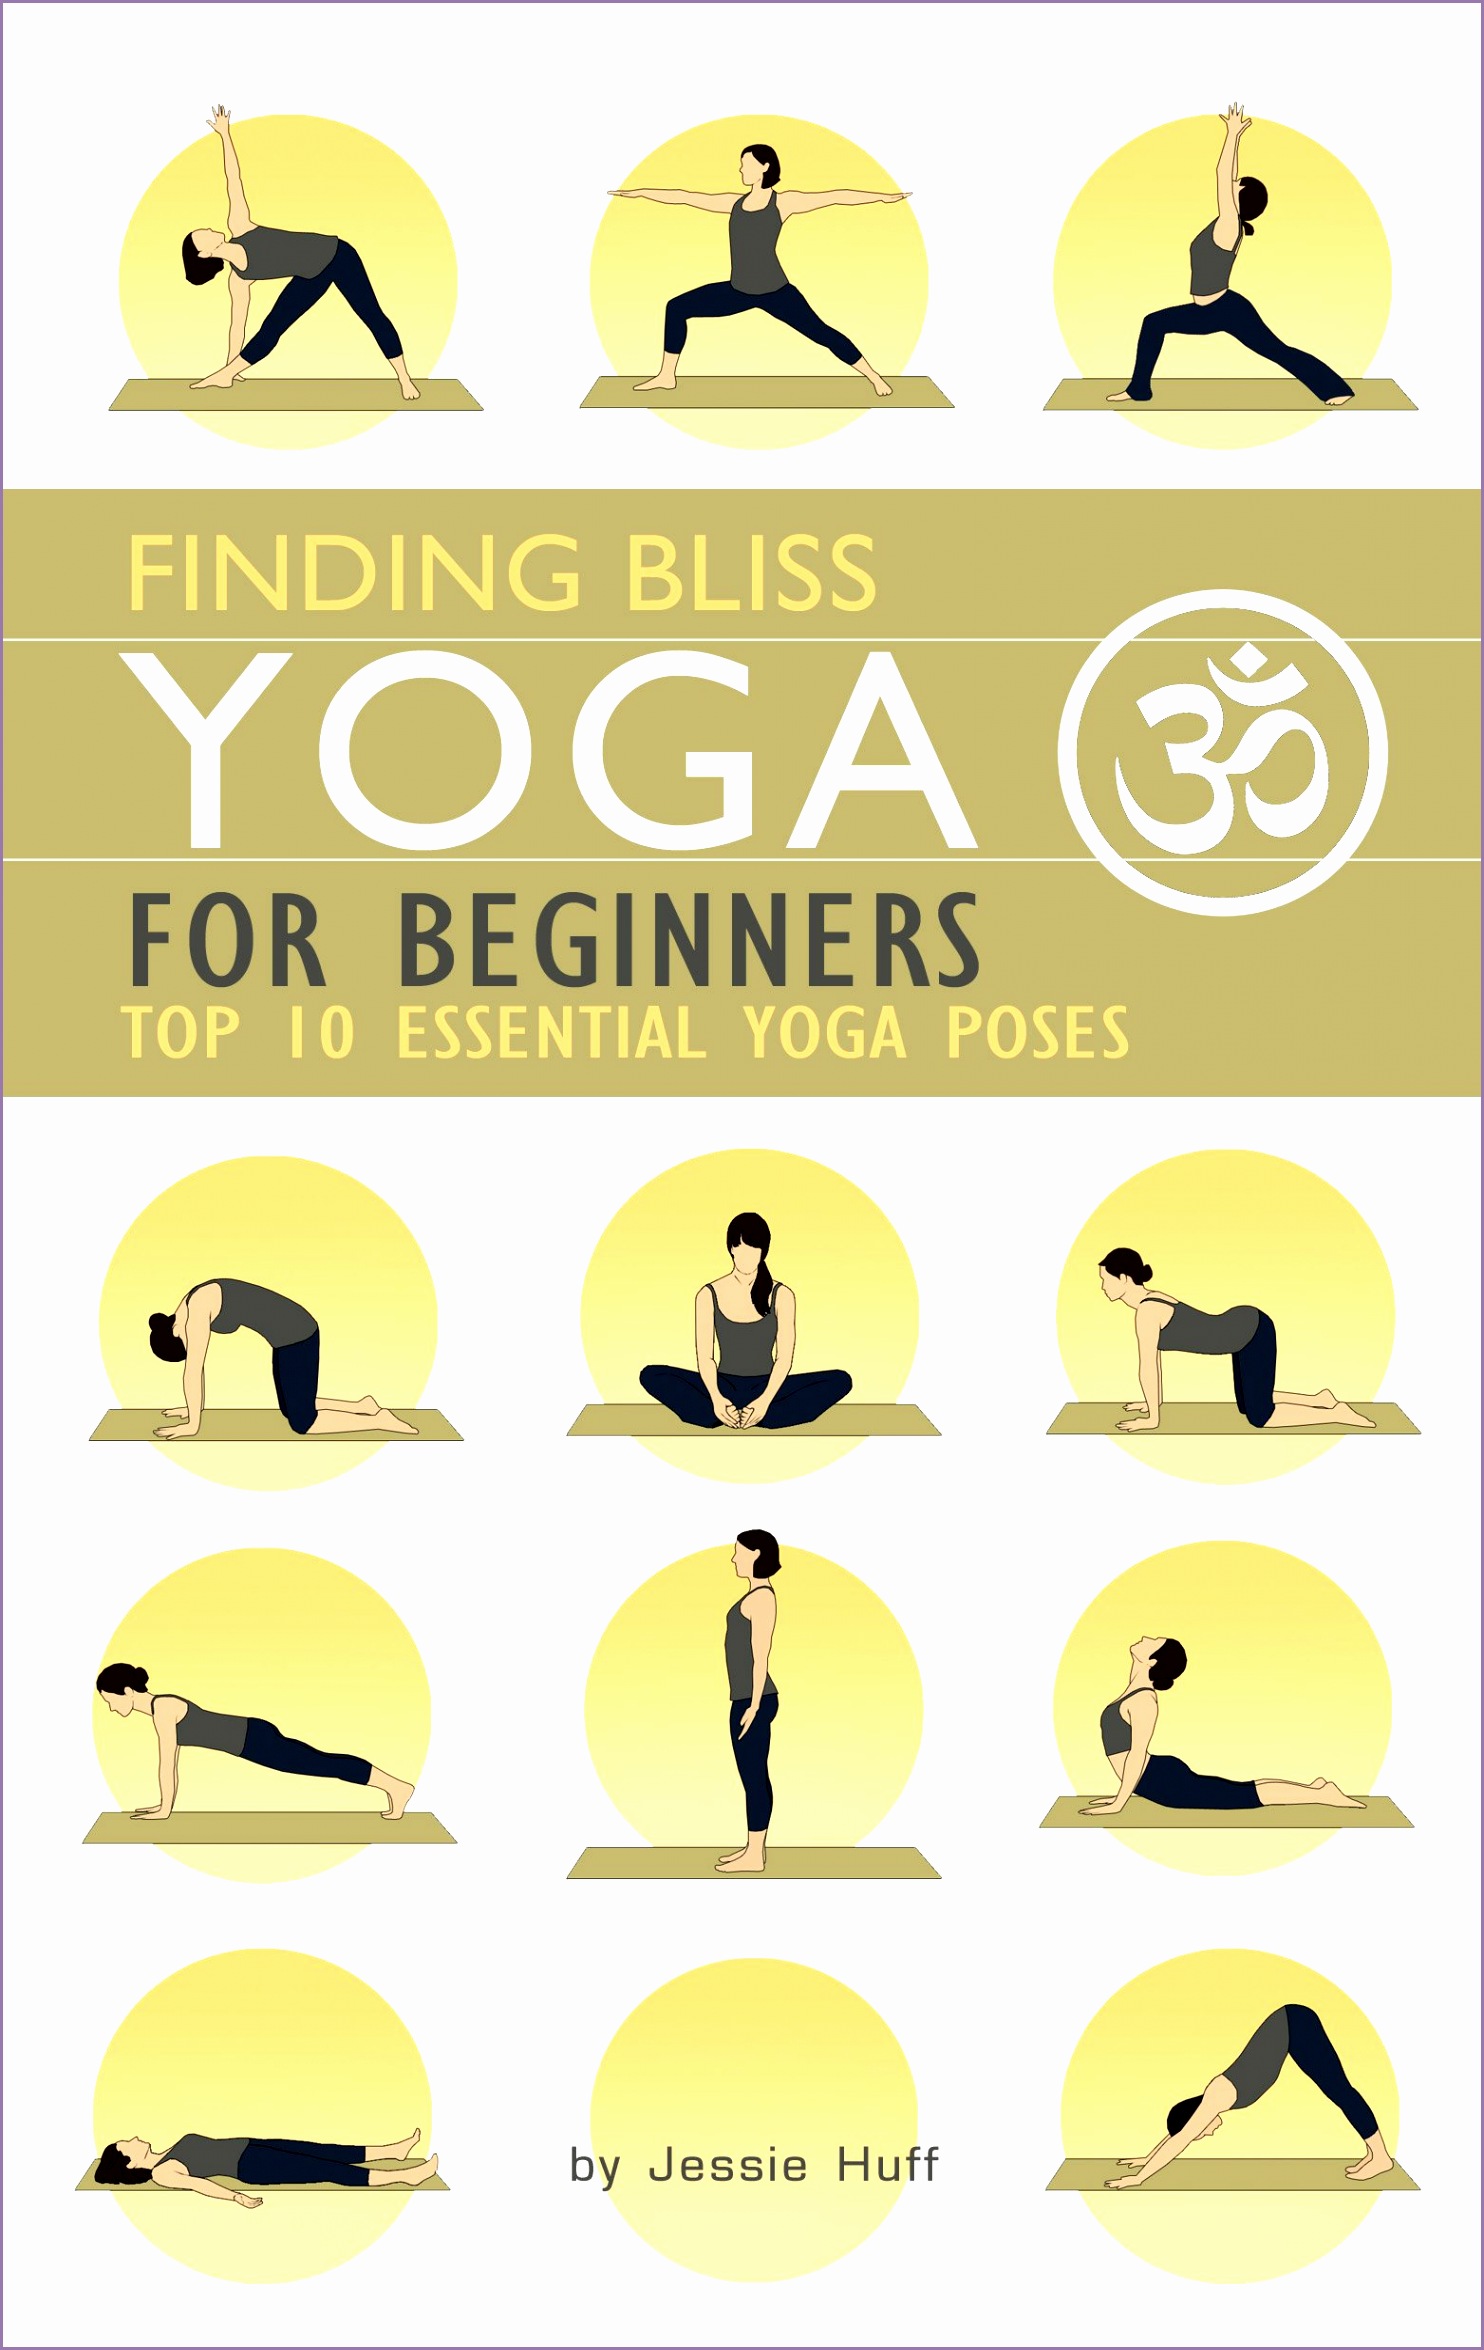 10 basic yoga poses